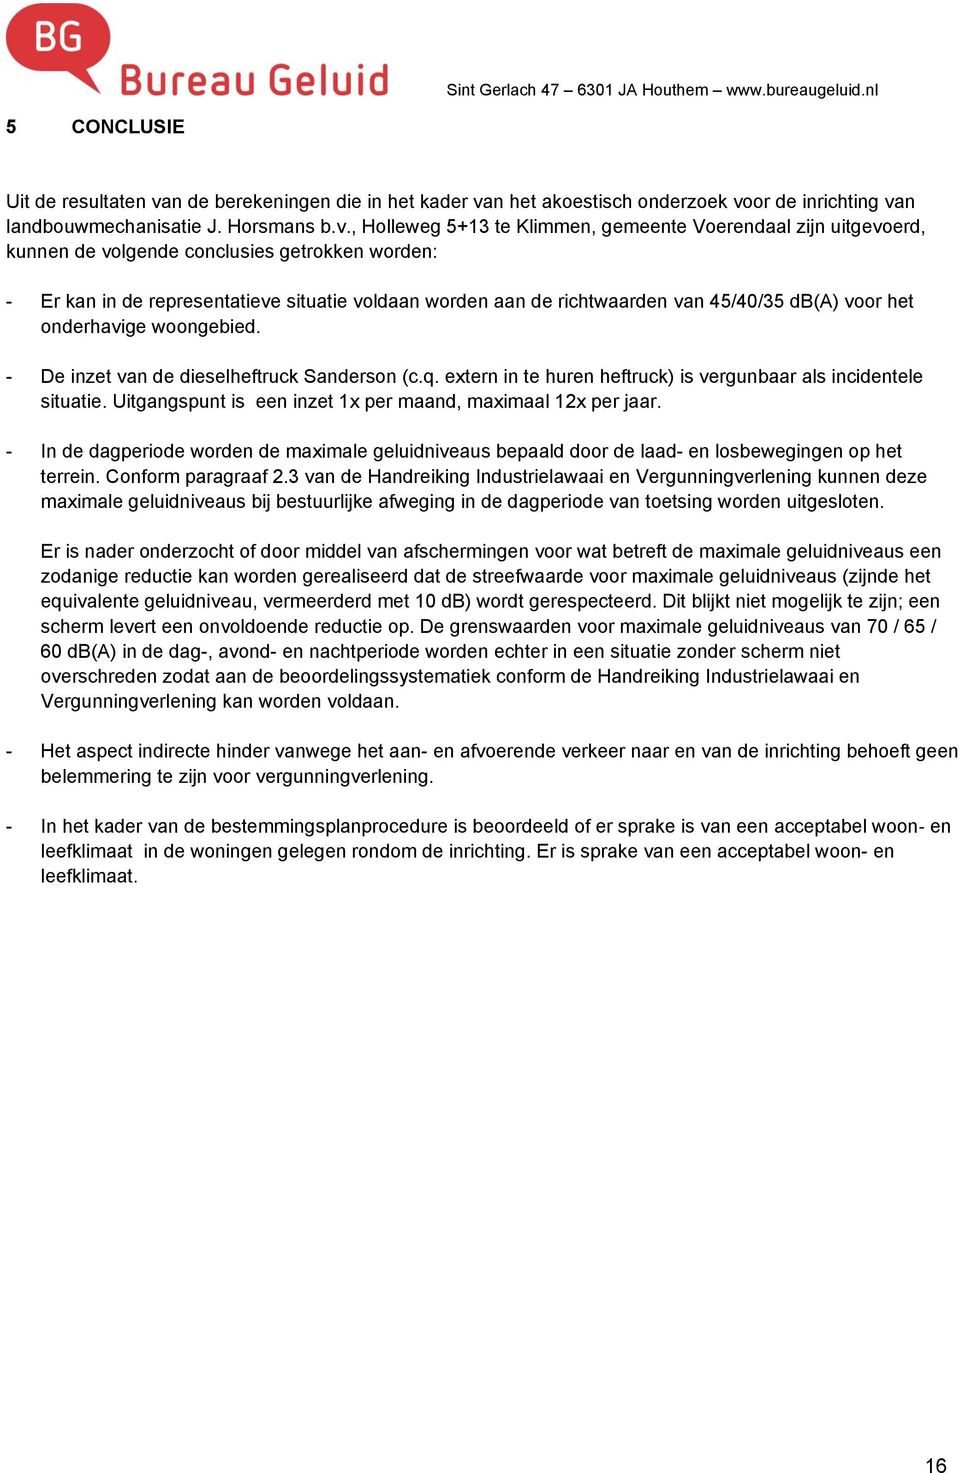 , Holleweg 5+13 te Klimmen, gemeente Voerendaal zijn uitgevoerd, kunnen de volgende conclusies getrokken worden: - Er kan in de representatieve situatie voldaan worden aan de richtwaarden van